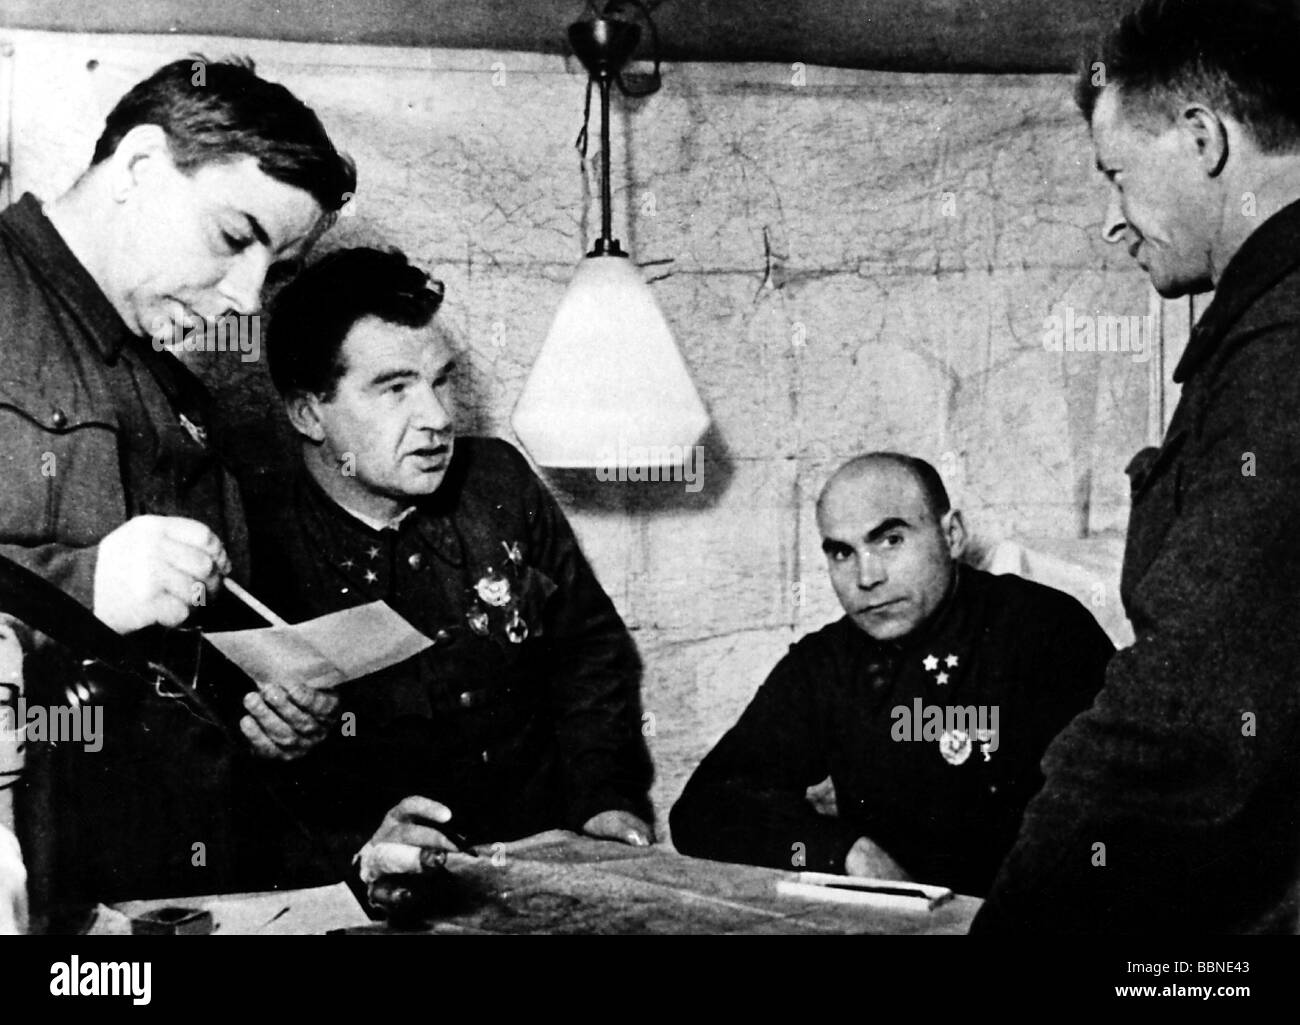 Événements, seconde Guerre mondiale / seconde Guerre mondiale, Russie, Stalingrad 1942 / 1943, Banque D'Images